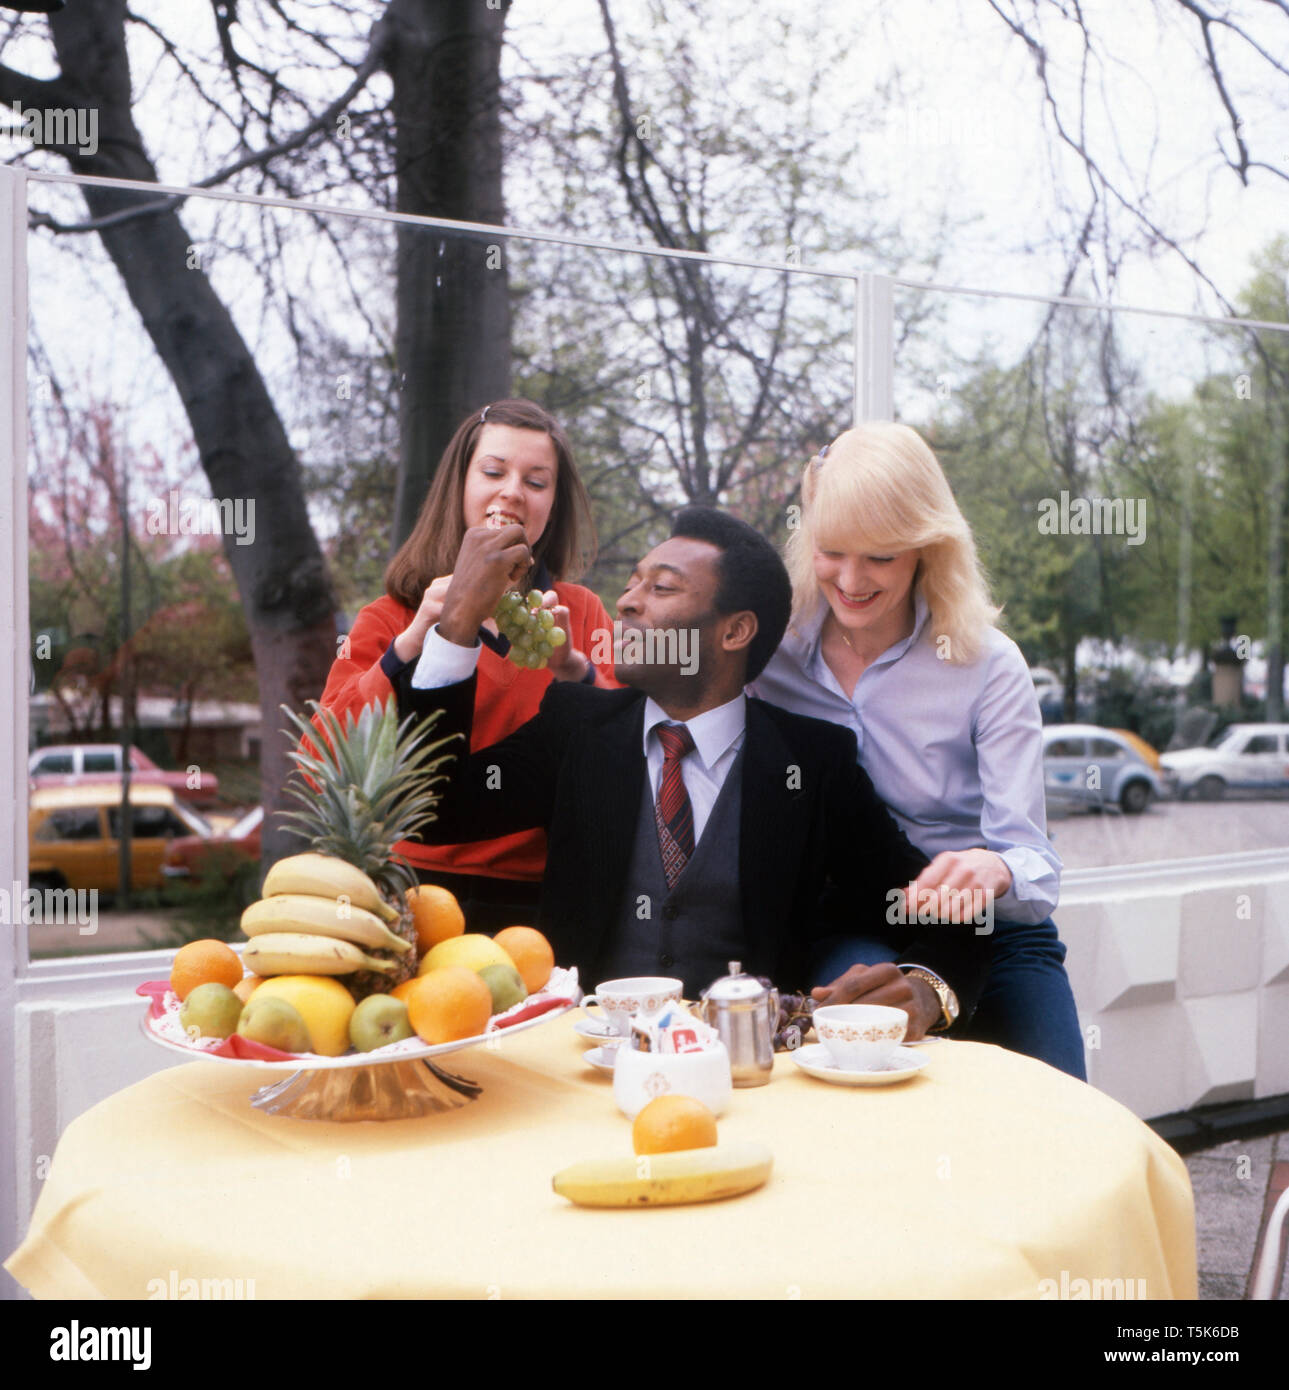 Die Fußballlegende Pele frühstückt zusammen mit zwei jungen Frauen, Deutschland 1981. La leyenda del fútbol, Pele, está desayunando junto con dos jóvenes, Alemania 1981. Foto de stock